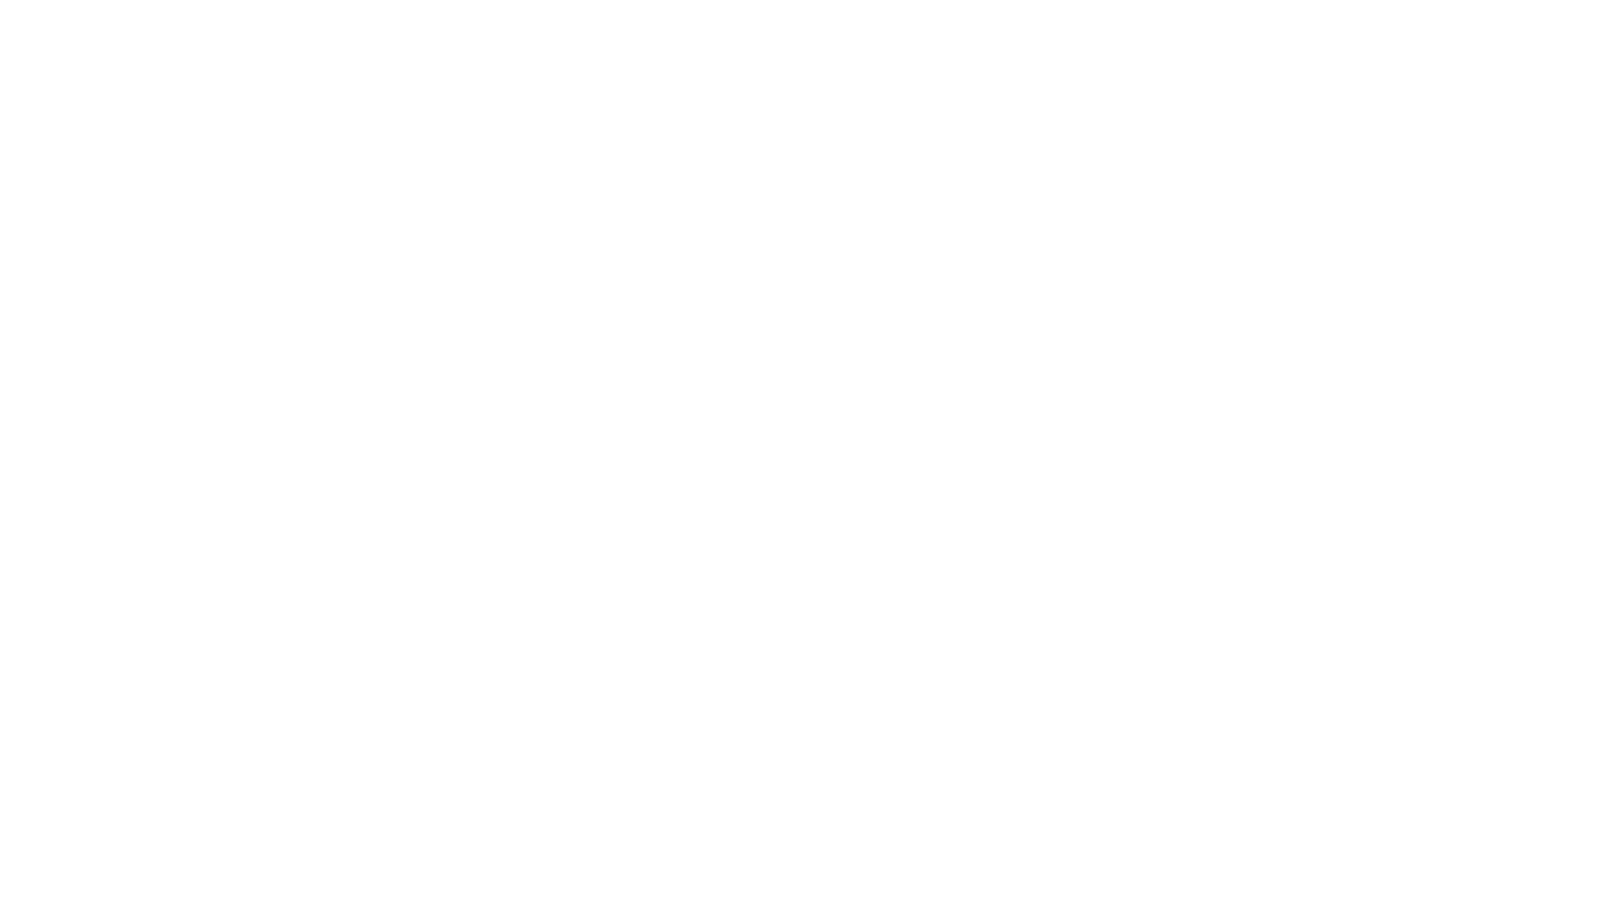 Los Ángeles Azules y Natalia Lafourcade interpretando "Nunca Es Suficiente" desde Puerto Progreso, Yucatán, México.

“NATALIA LAFOURCADE” aparece bajo autorización de Sony Music Entertainment México, S.A. de C.V.

#LosAngelesAzules #NuncaEsSuficiente #Vevo #Latino #Life